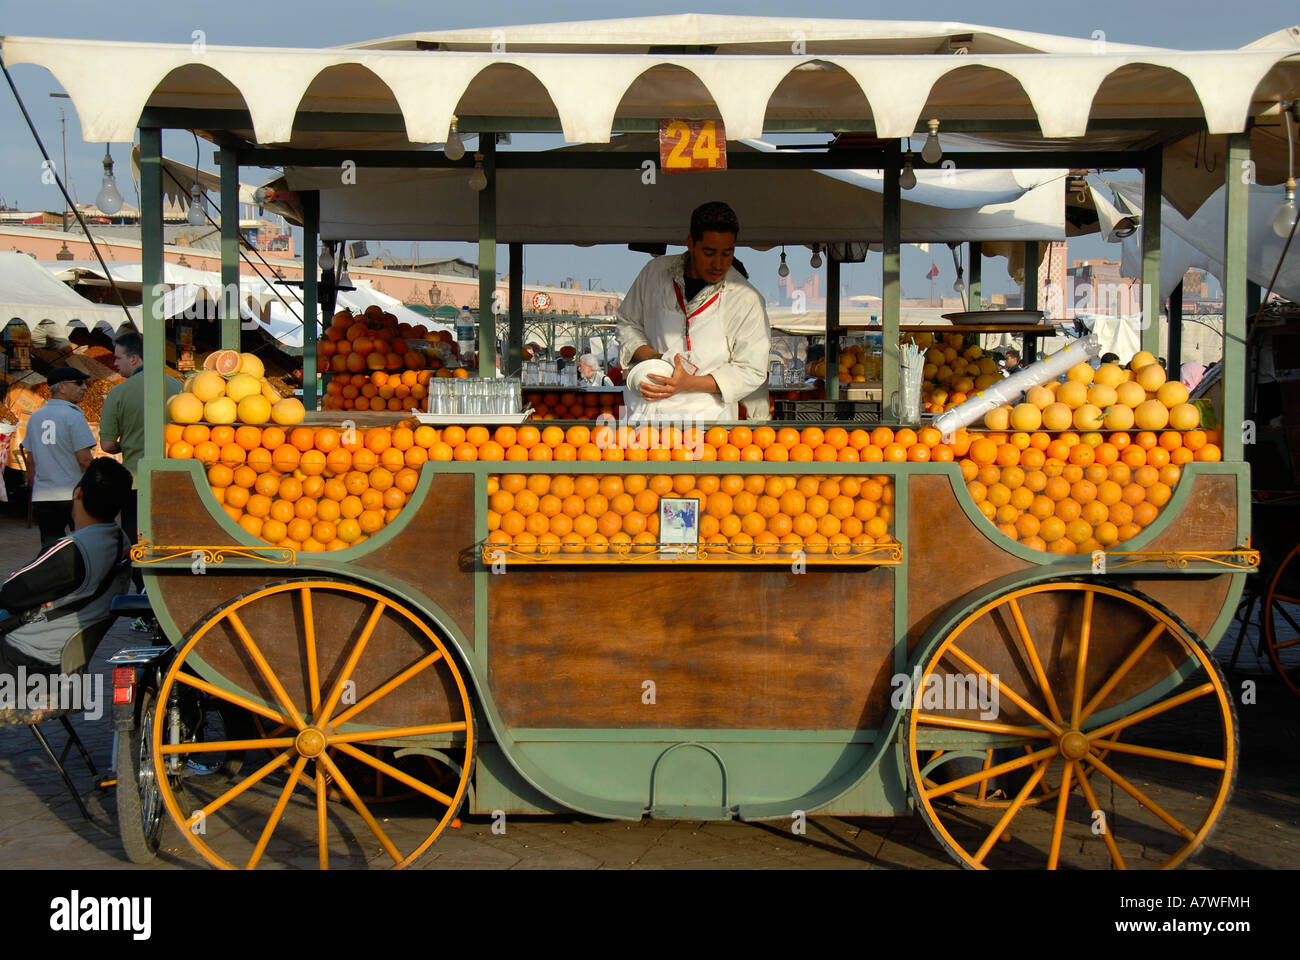 Vendeur d'Oranges et jus d'orange dans son échoppe de Djemaa el-fna Marrakech Maroc Banque D'Images